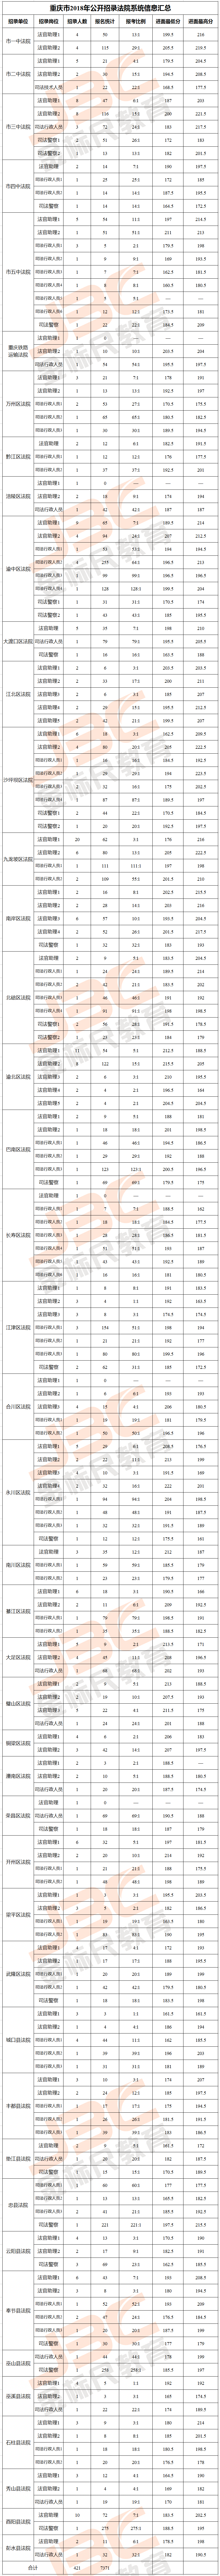 2018重庆法检考试进面分数线汇总